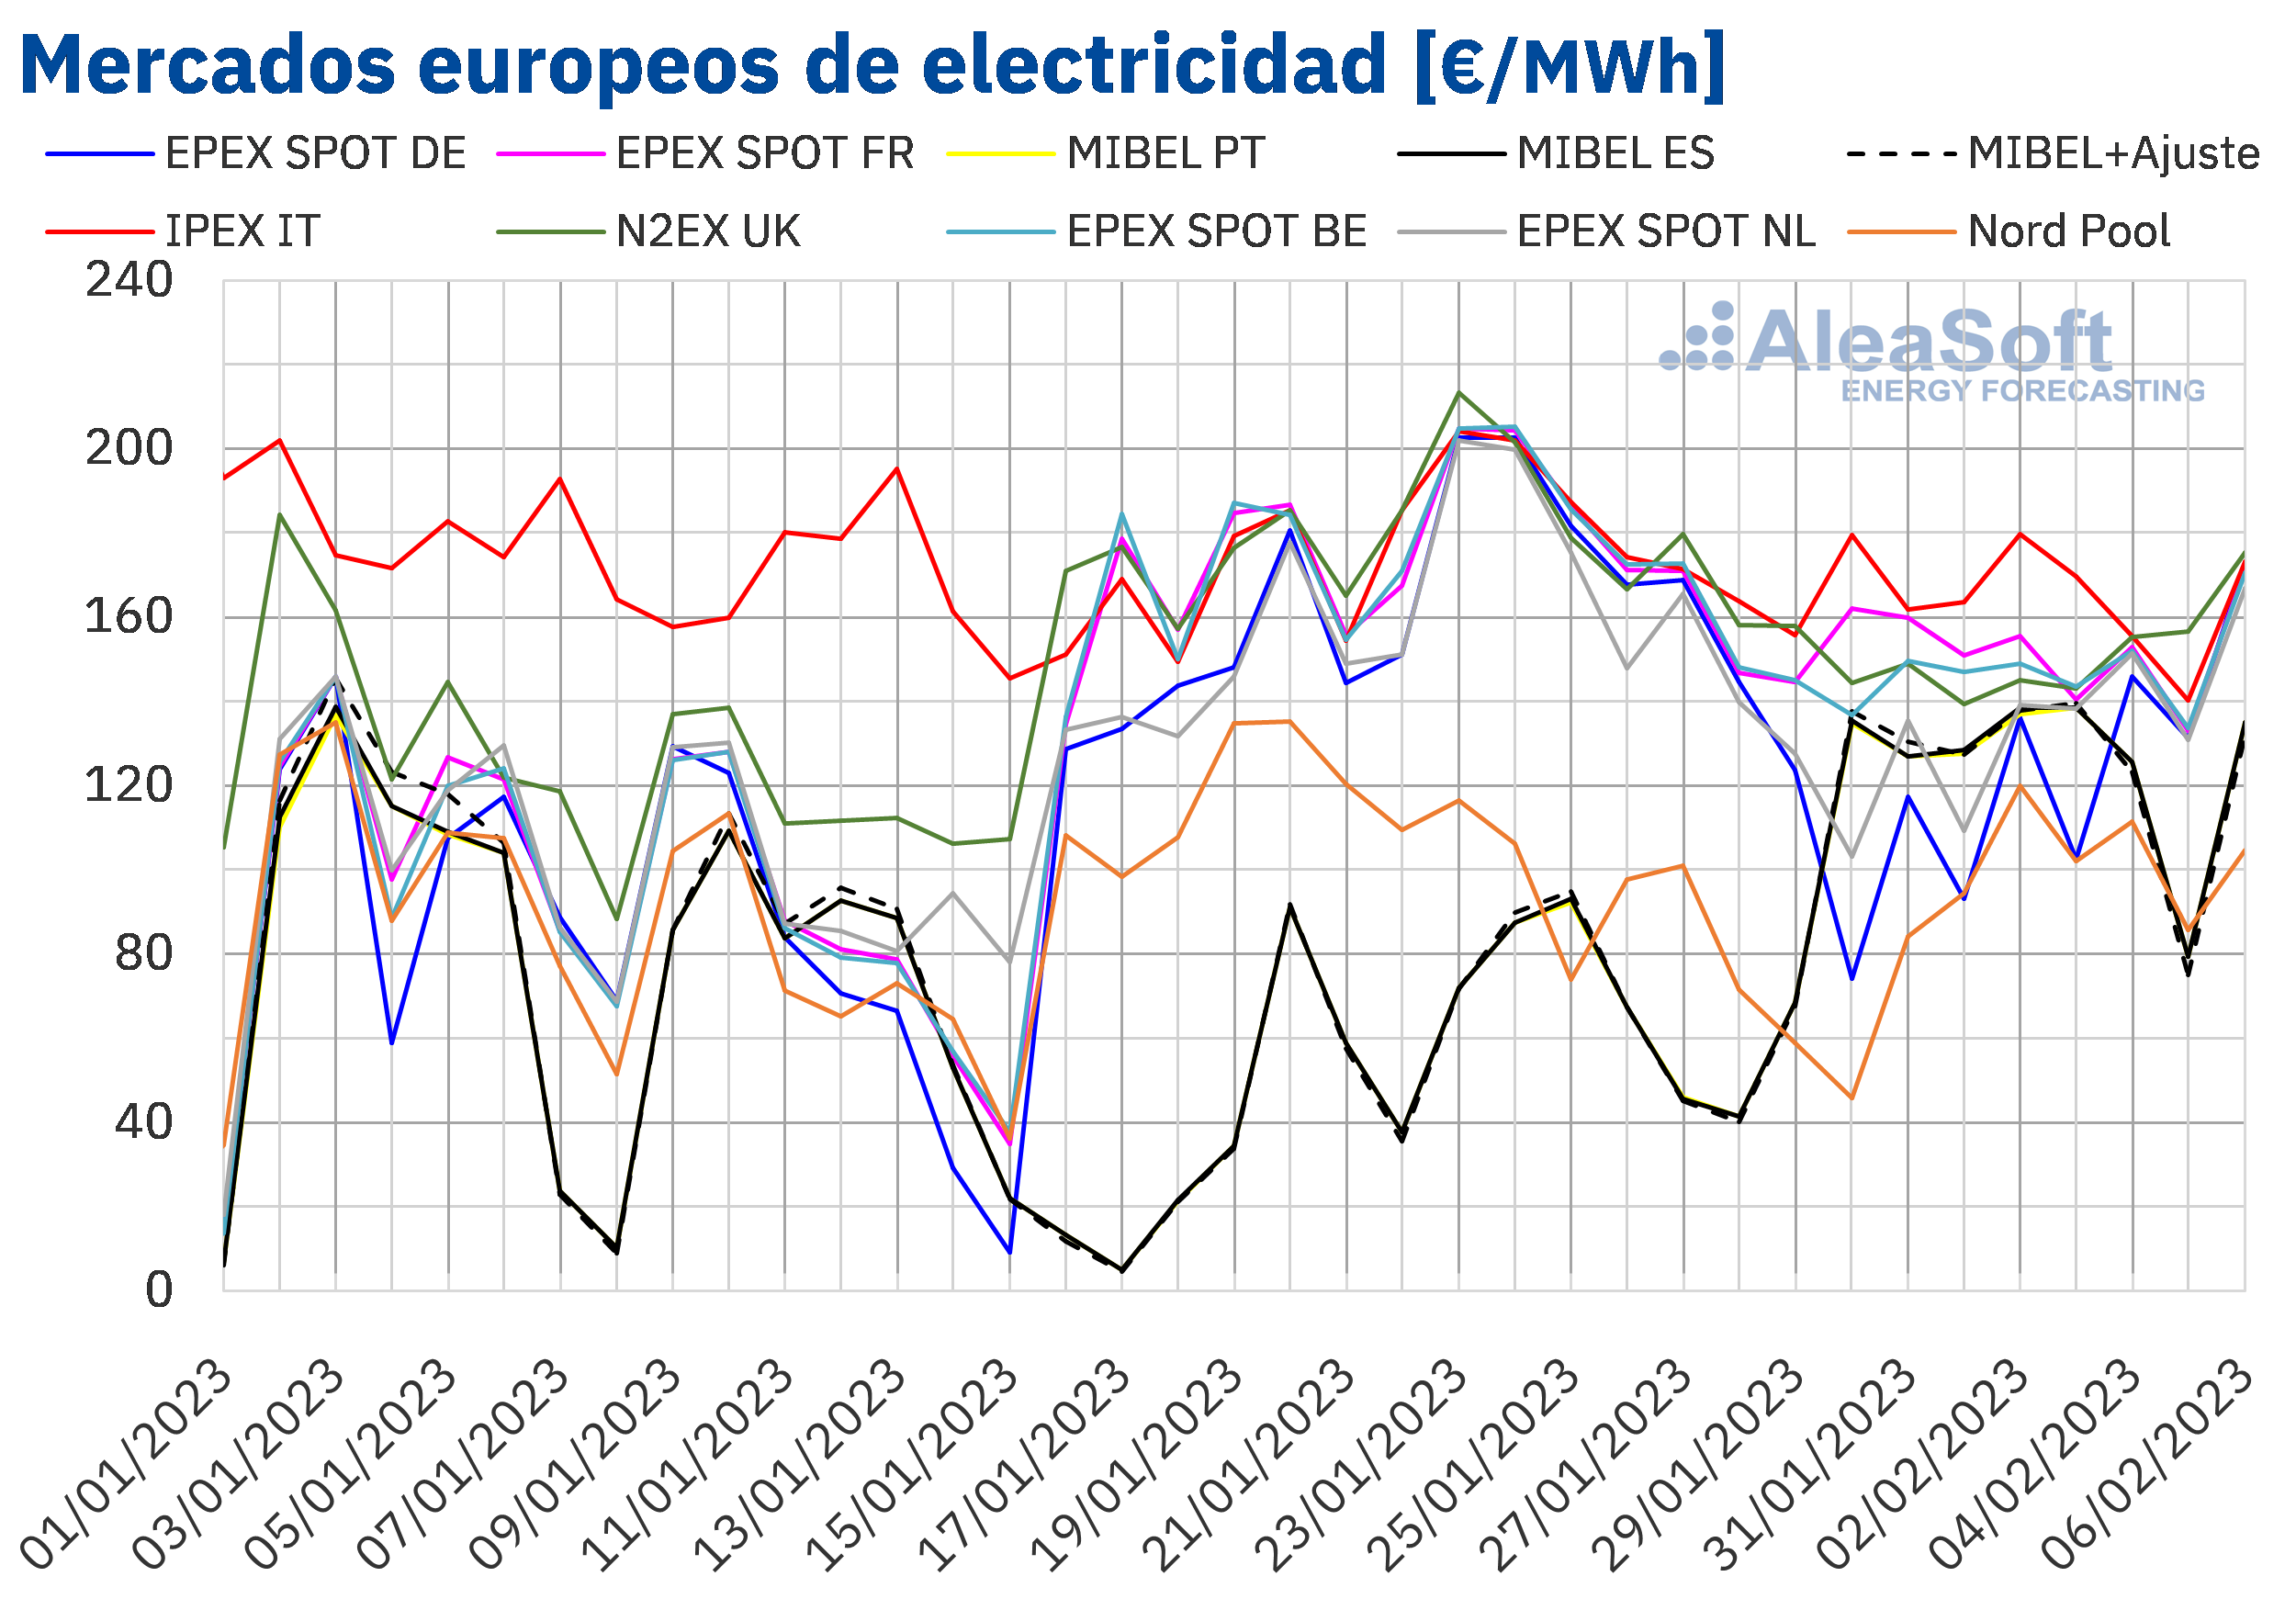 AleaSoft: Los mercados europeos empiezan febrero a la baja ayudados por la demanda, las renovables y el gas